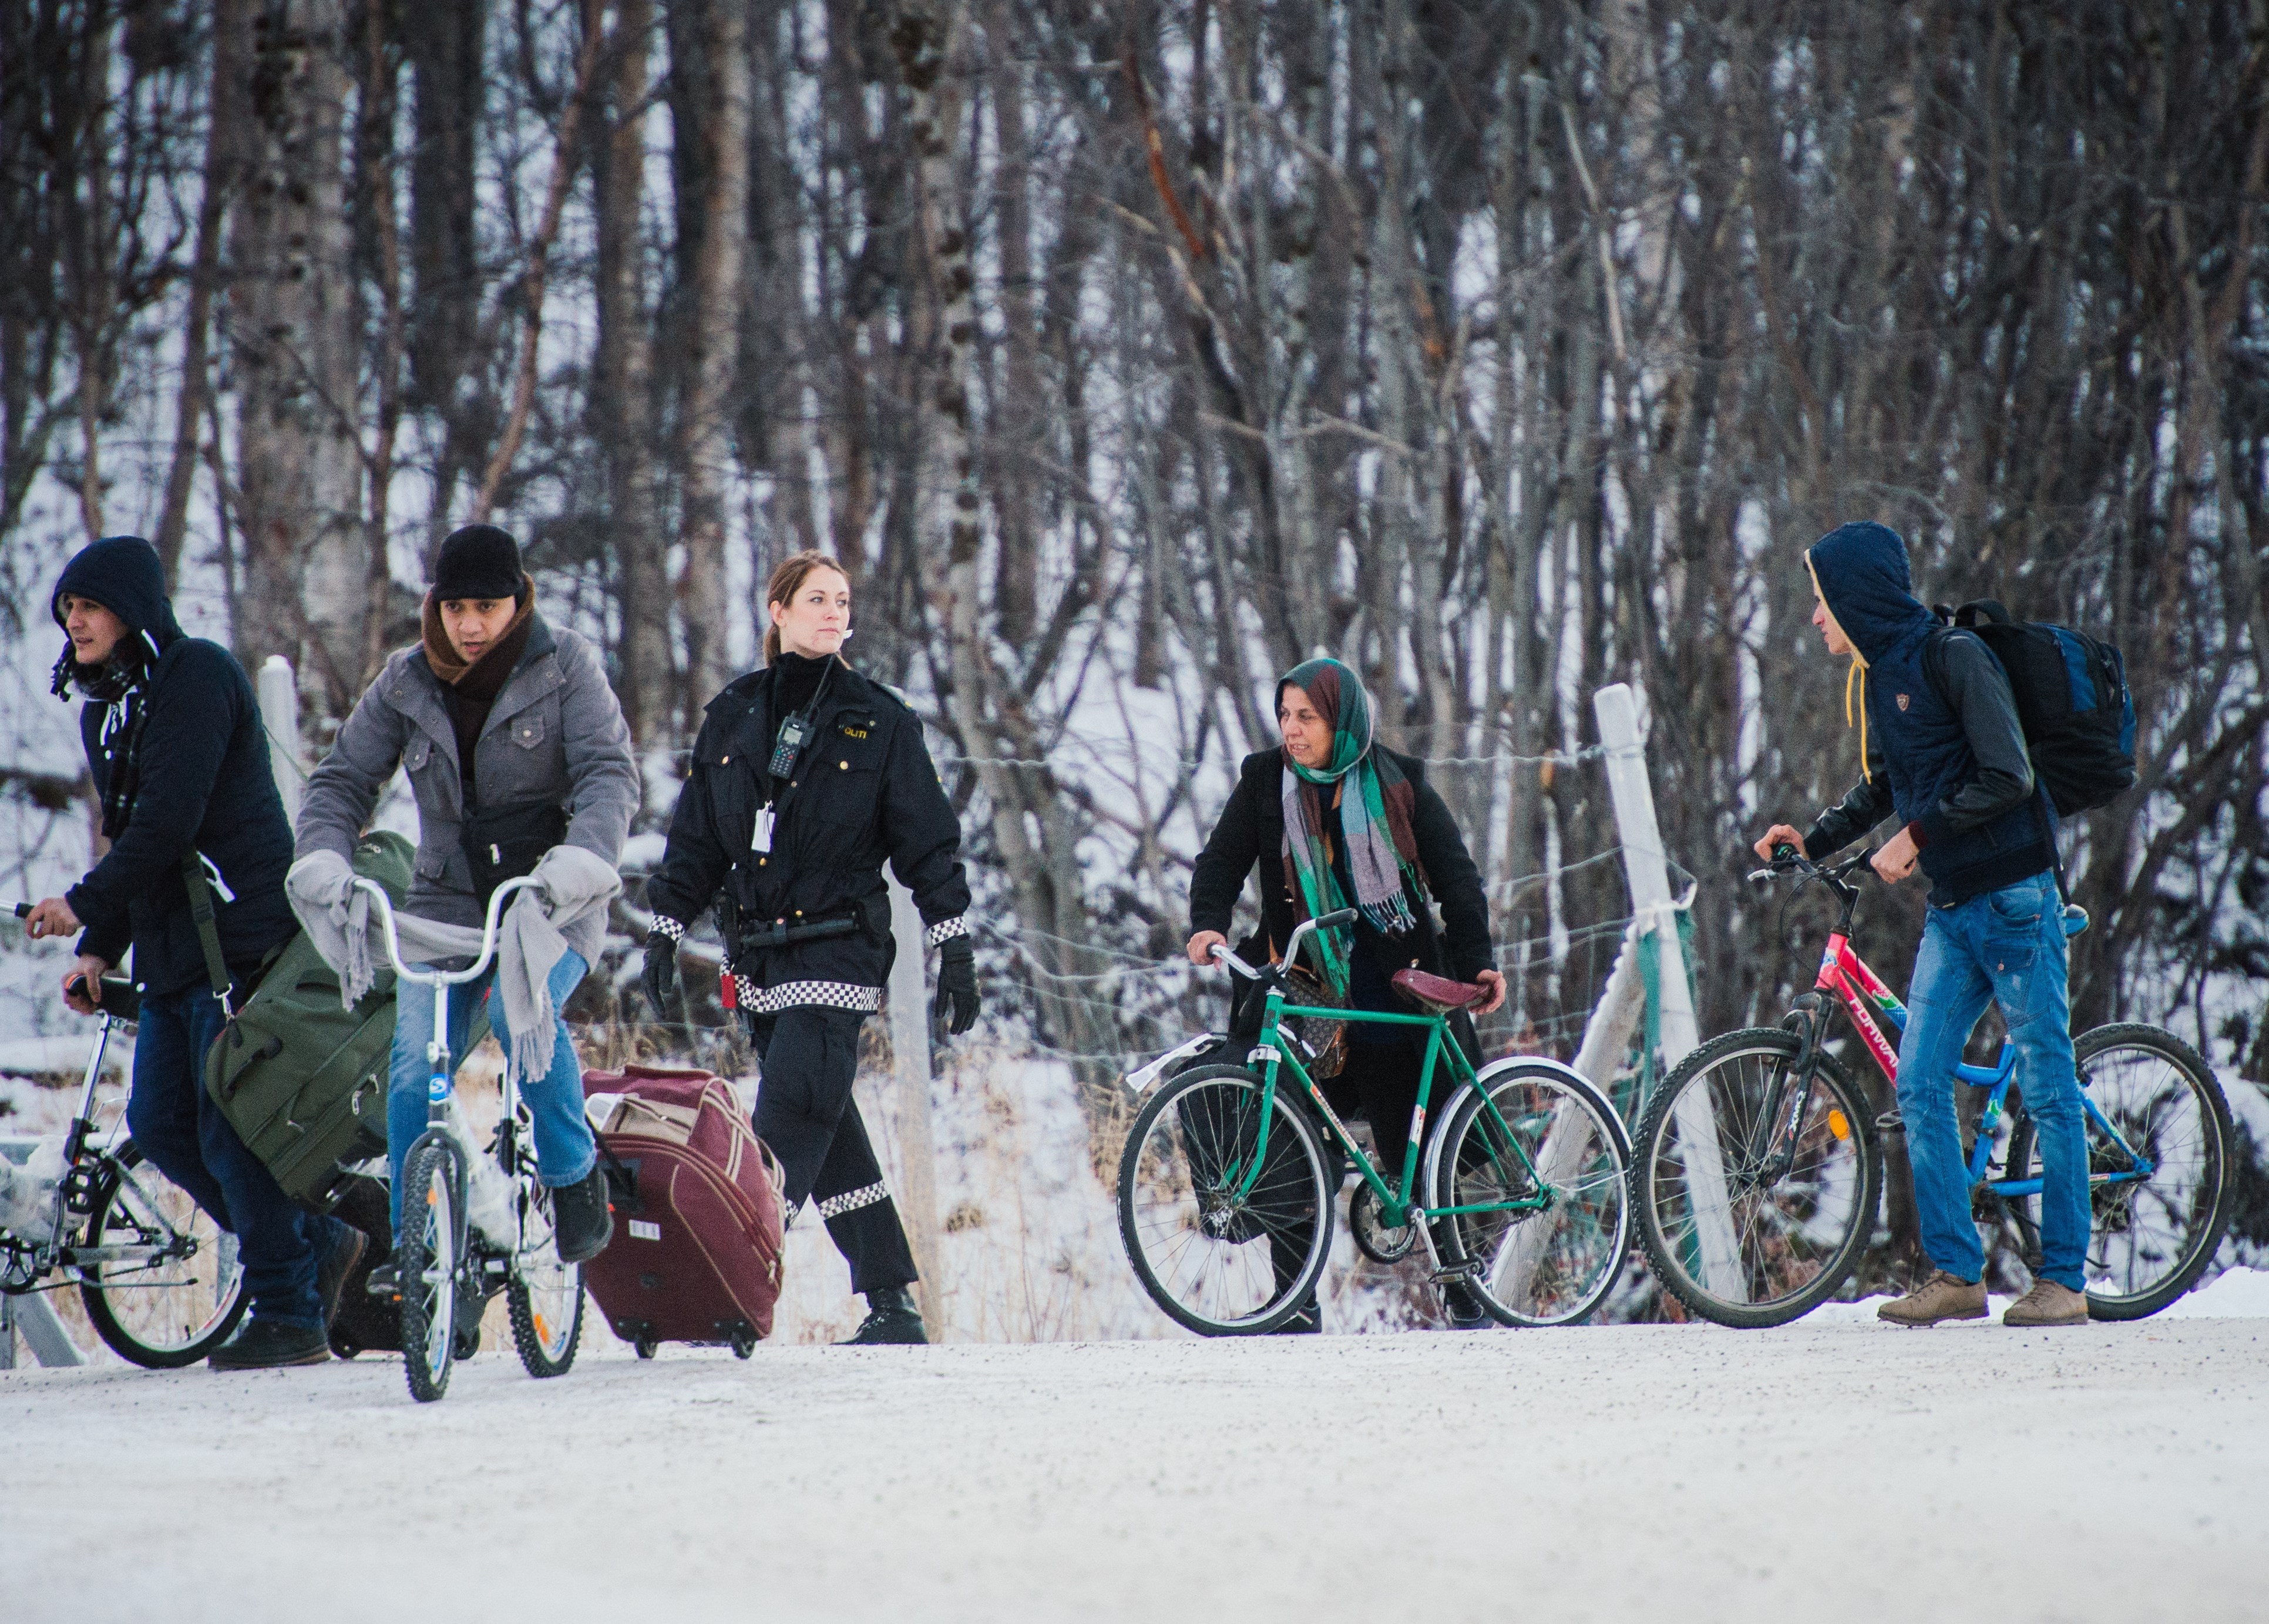 Abschiebung bei Minus 17 Grad – Norwegen schickt Asylbewerber per Fahrrad zurück nach Russland